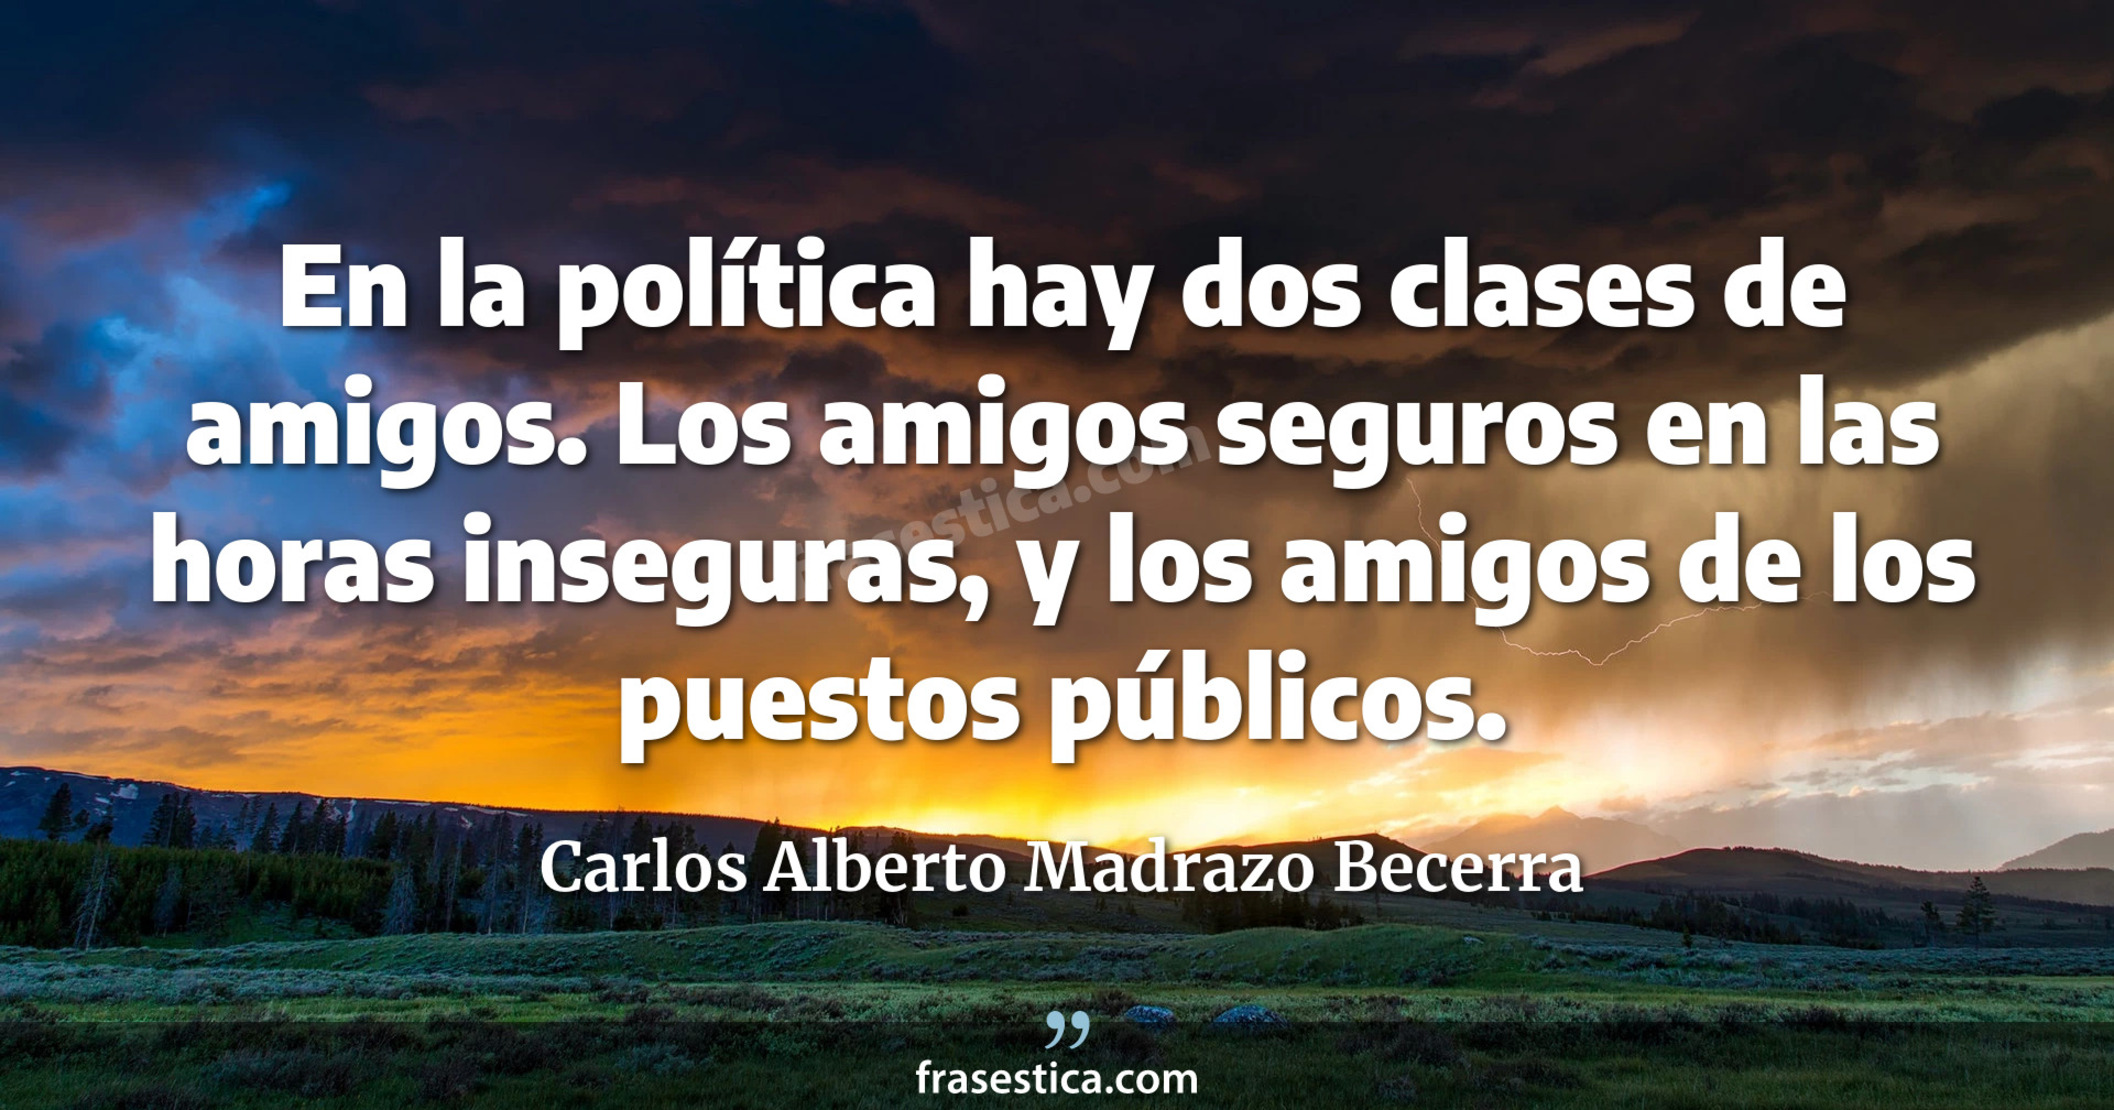 En la política hay dos clases de amigos. Los amigos seguros en las horas inseguras, y los amigos de los puestos públicos. - Carlos Alberto Madrazo Becerra